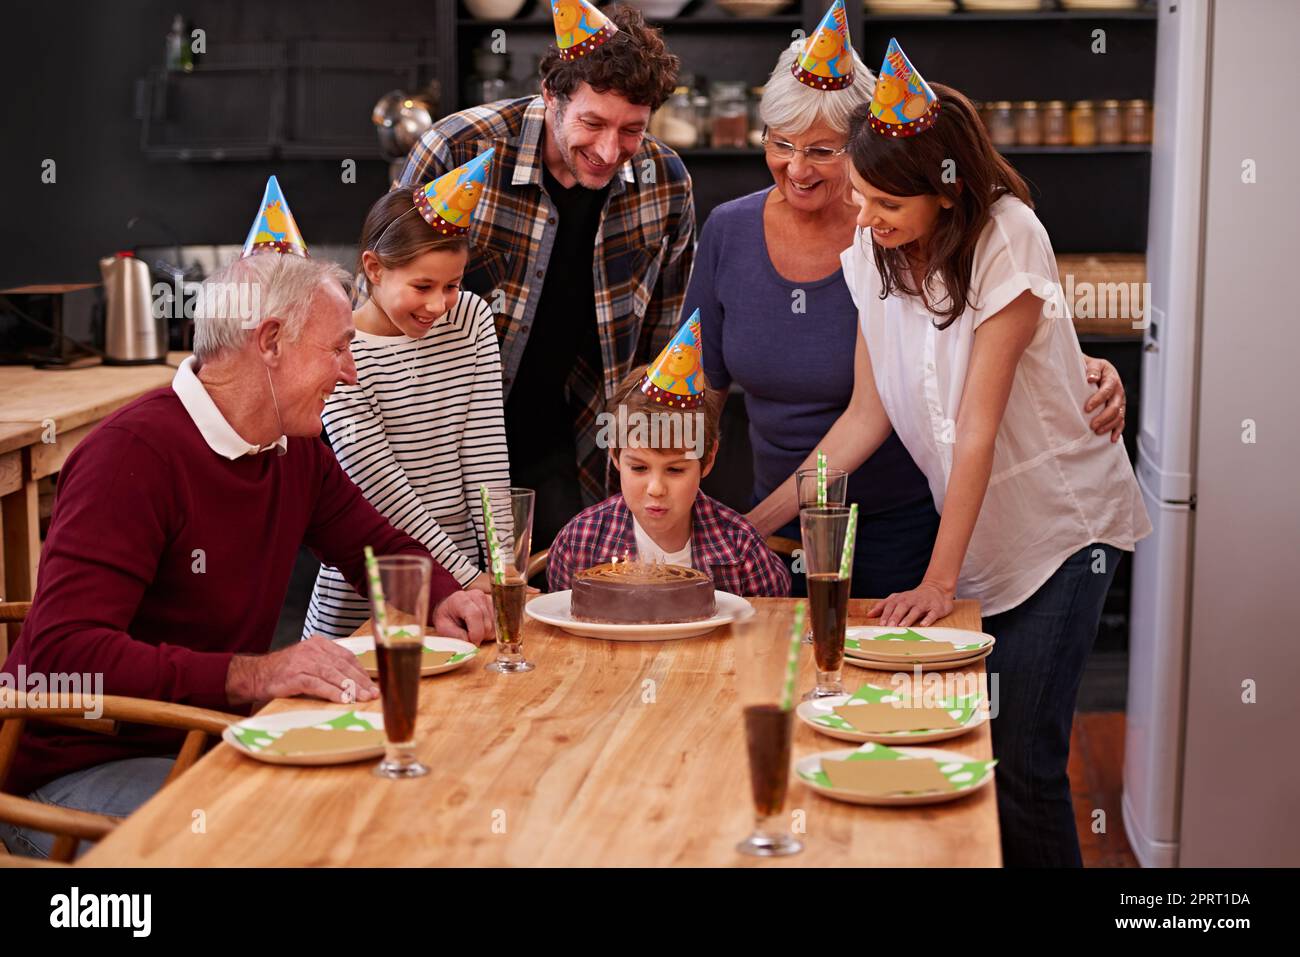 Mögen alle Ihre Geburtstagswünsche wahr werden. Ein glücklicher kleiner Junge feiert seinen Geburtstag mit seiner Familie. Stockfoto